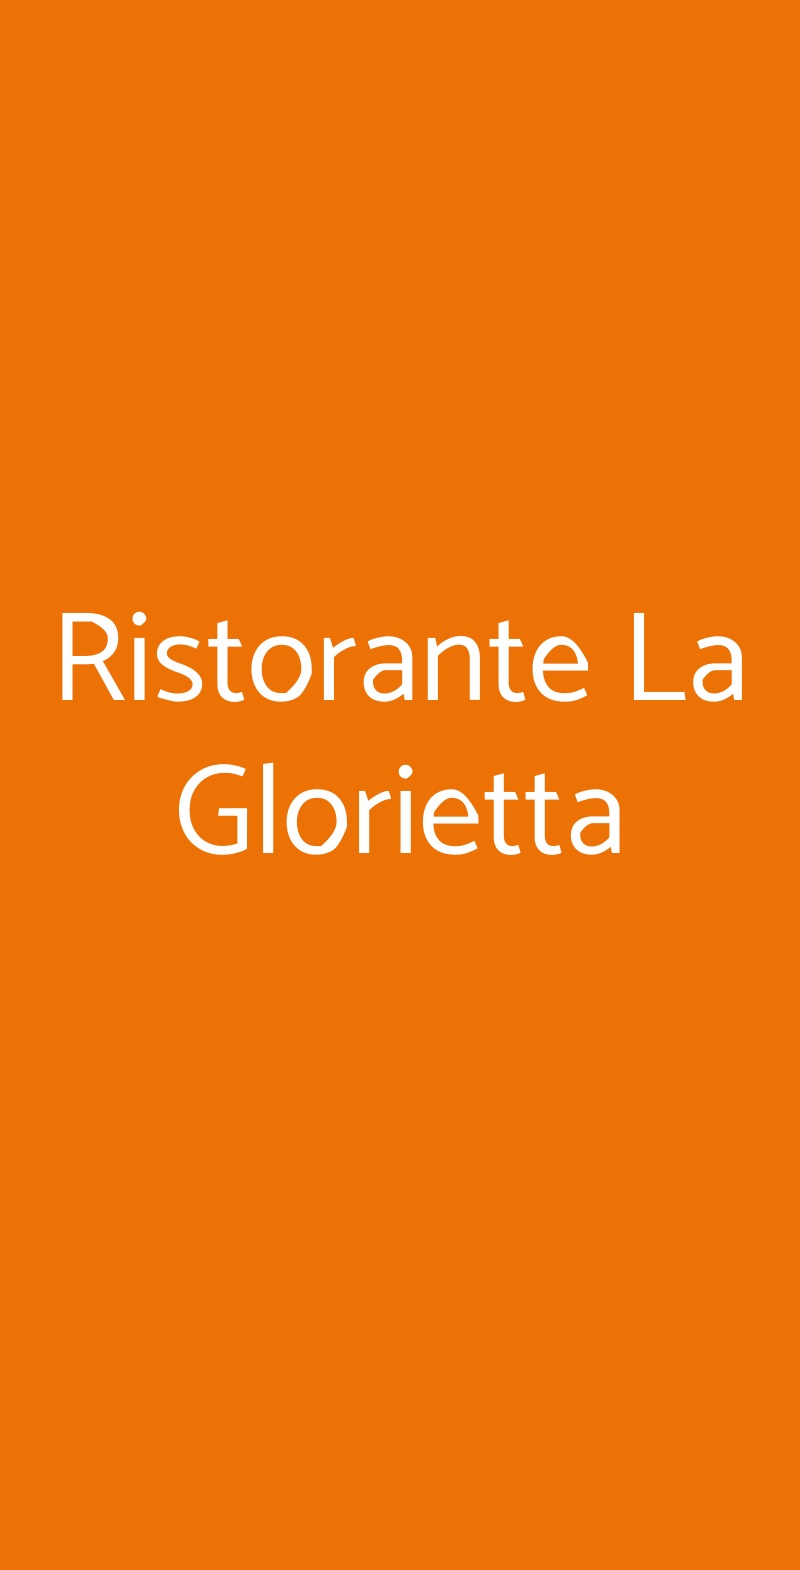 Ristorante La Glorietta Roma menù 1 pagina